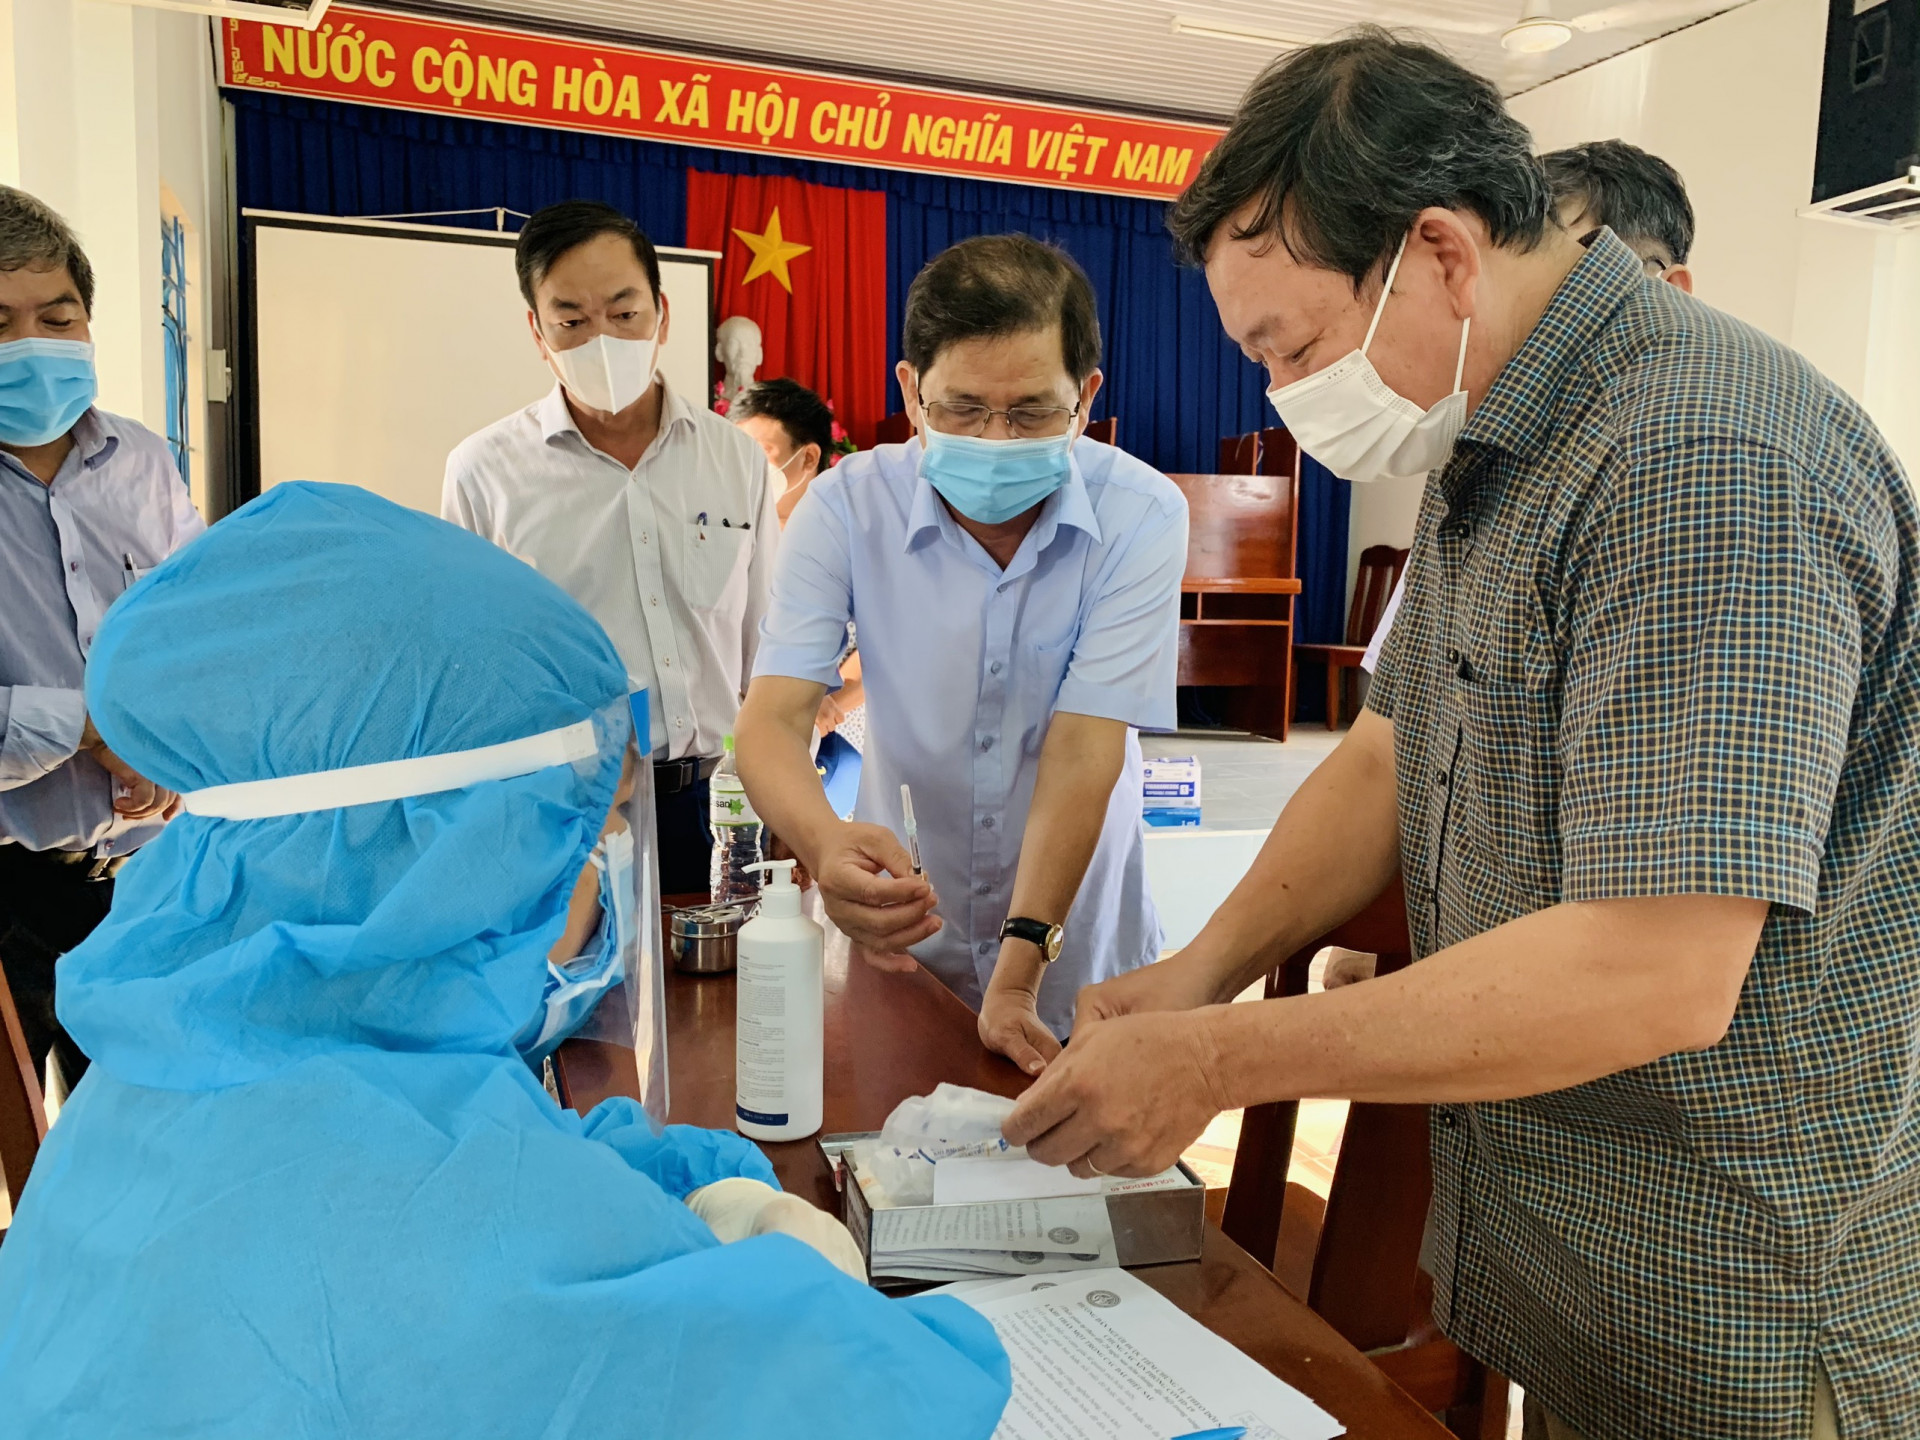  Ông Nguyễn Tấn Tuân trao đổi với lực lượng y tế về quy trình xử lý các trường hợp bị phản ứng phụ sau khi tiêm